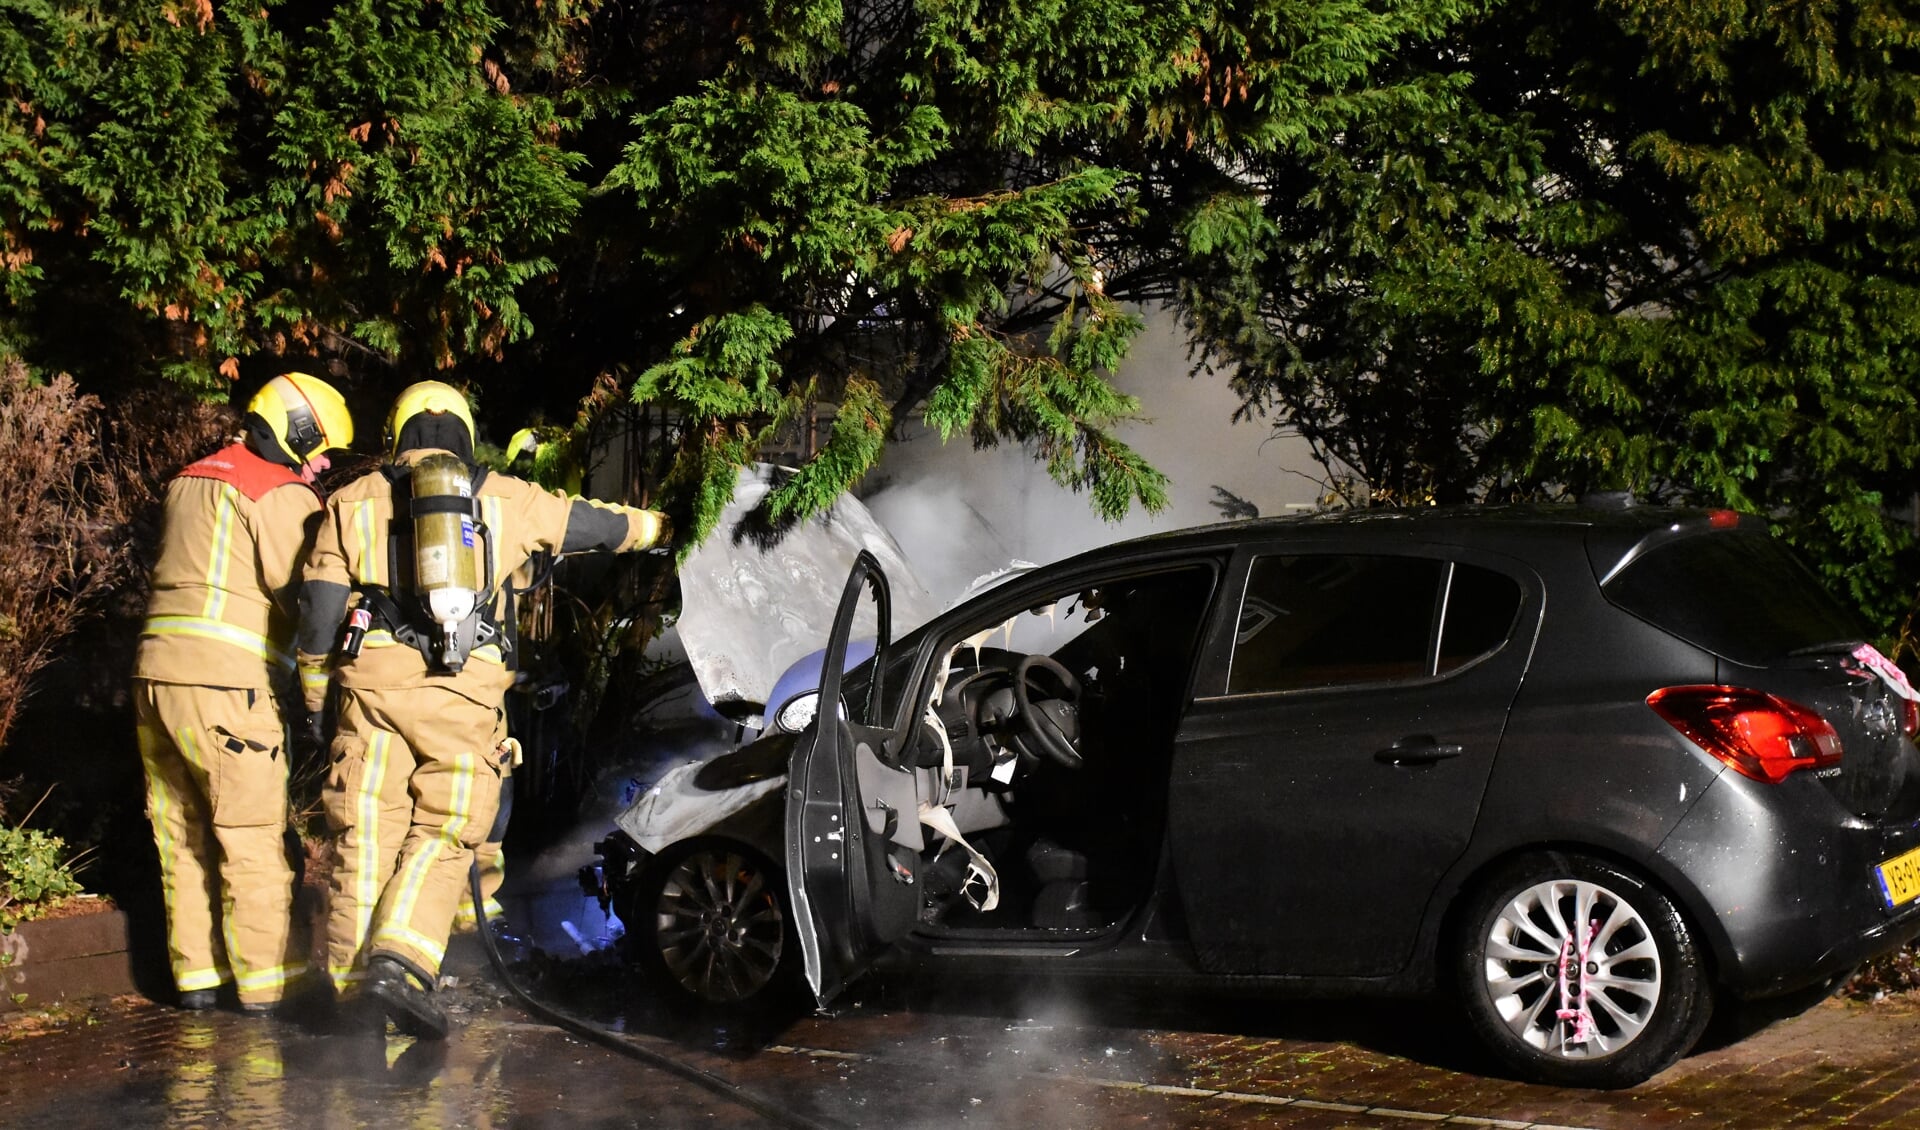 De brandweer kon niet voorkomen dat het motorcompartiment van de auto bijna geheel uitbrandde (foto: Sebastiaan Barel).